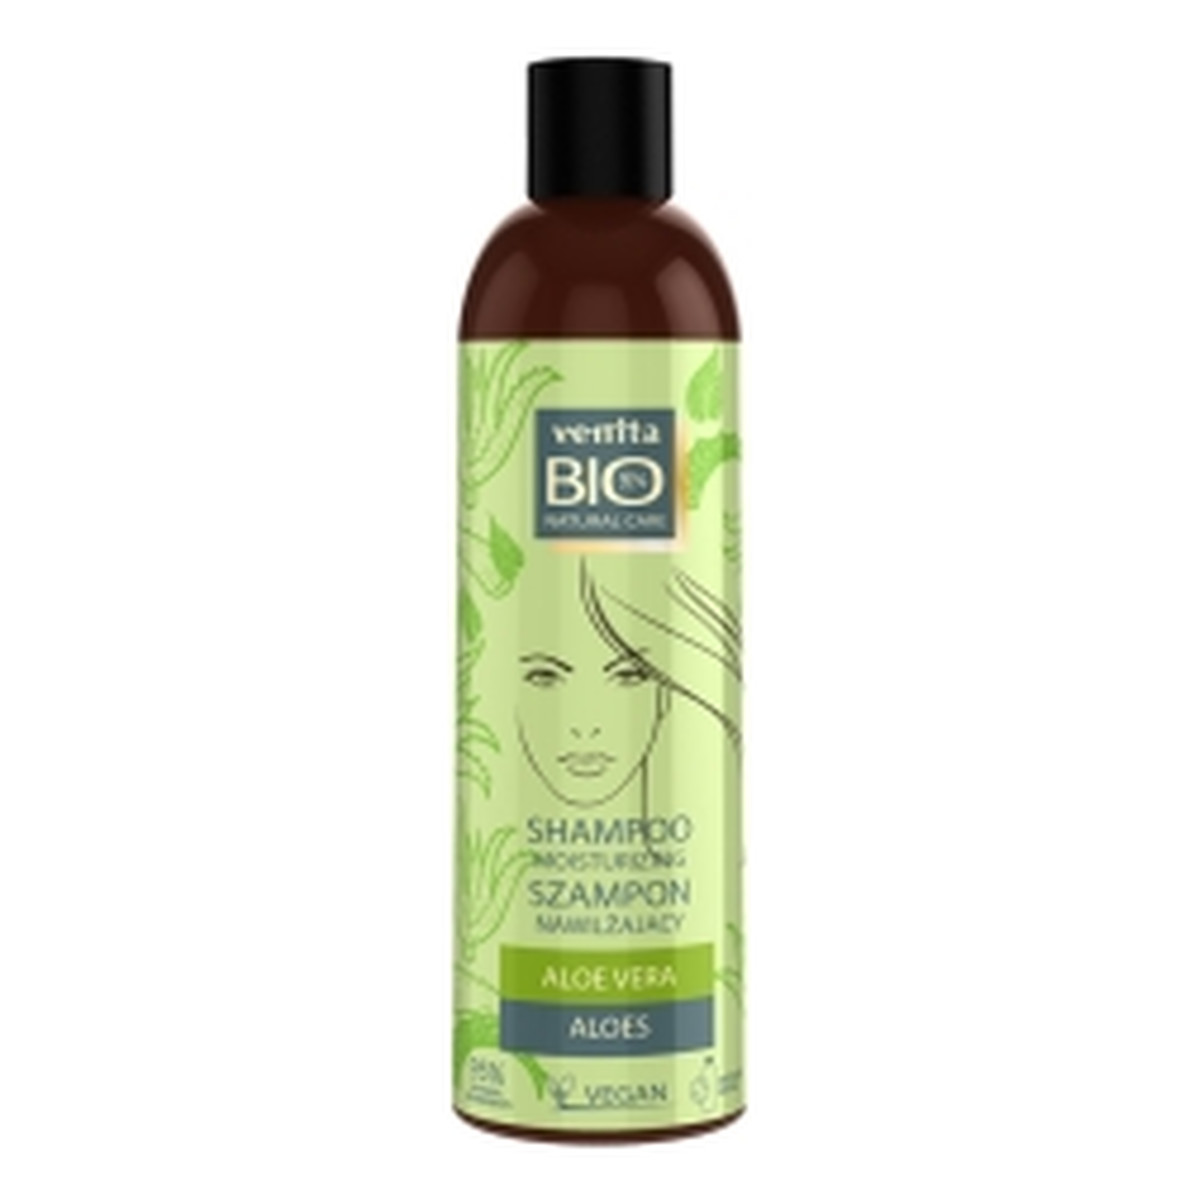 Venita Bio Natural Care Nawilżający szampon do włosów z alosem 300ml